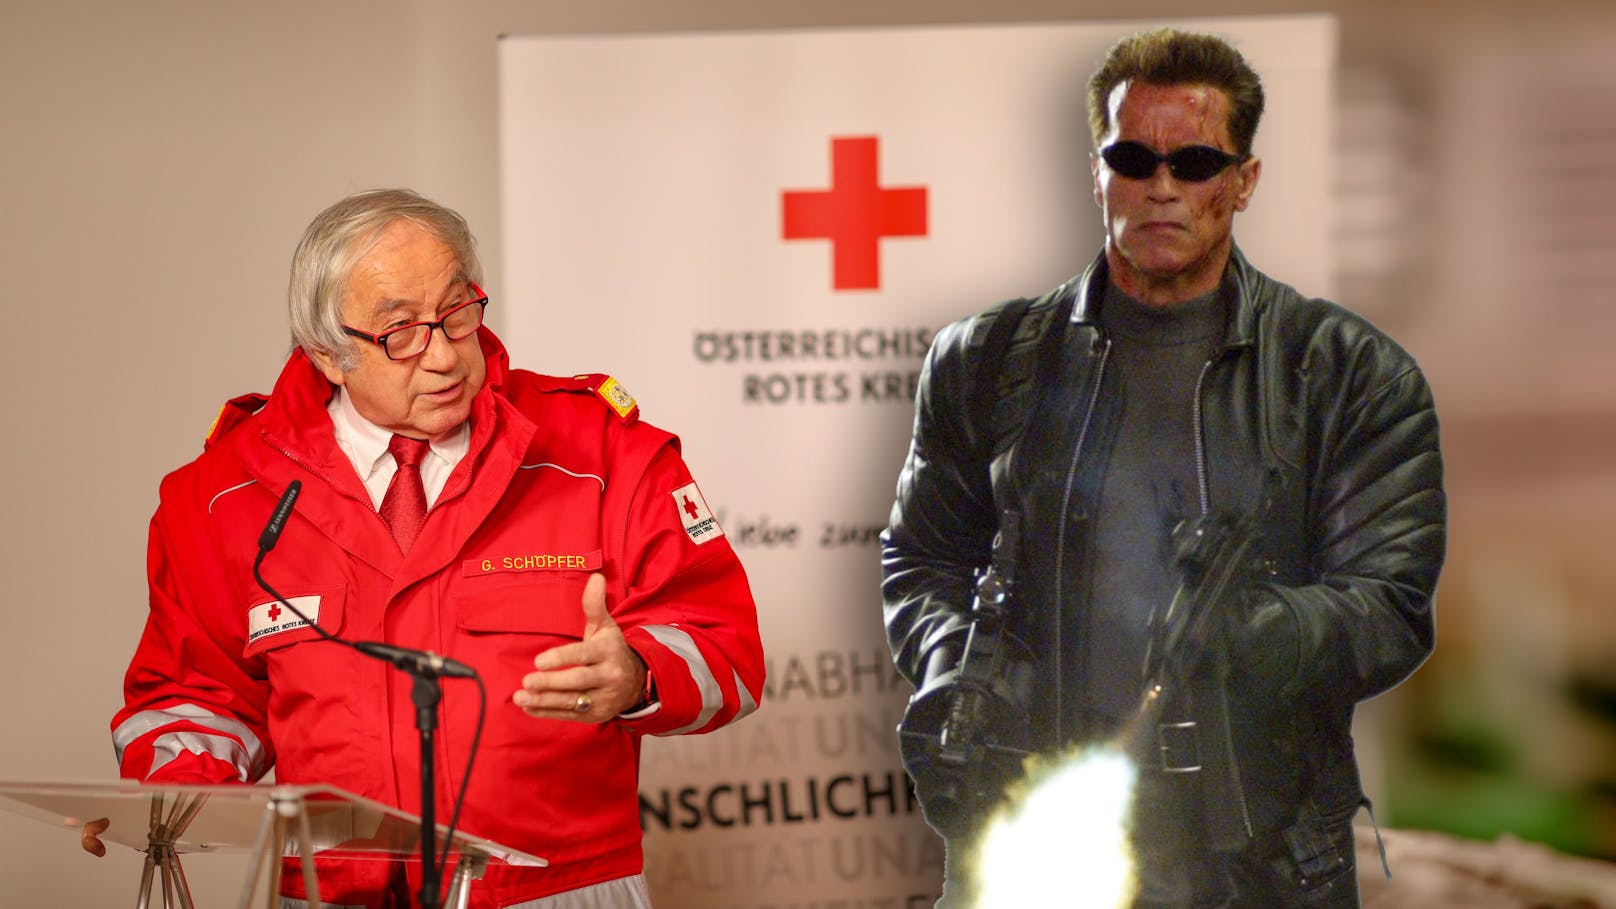 Rotkreuz-Präsident warnt vor echtem "Terminator"